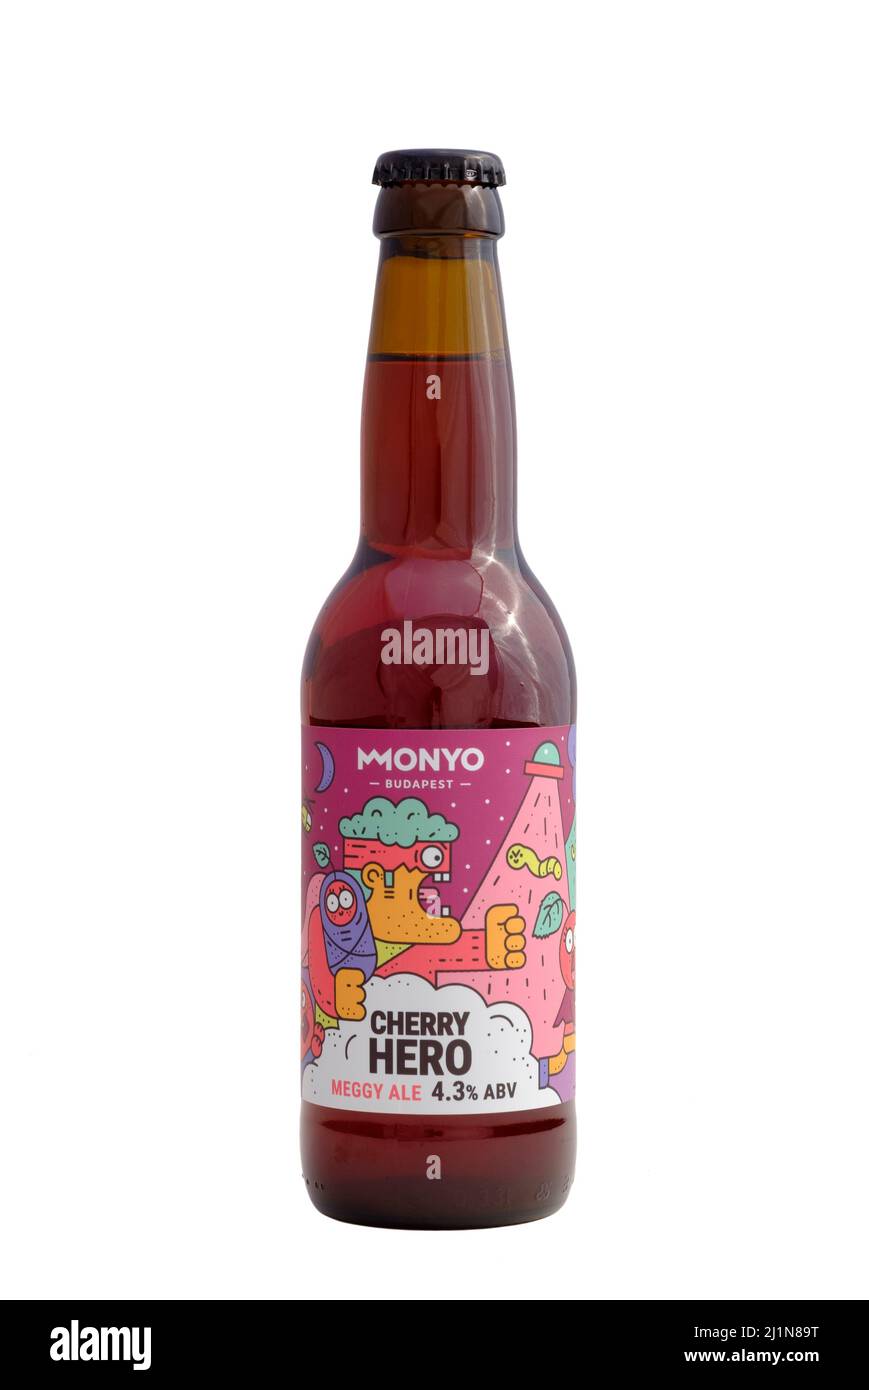 botella de cerveza monyo cereza héroe fruta cortada sobre fondo blanco Foto de stock